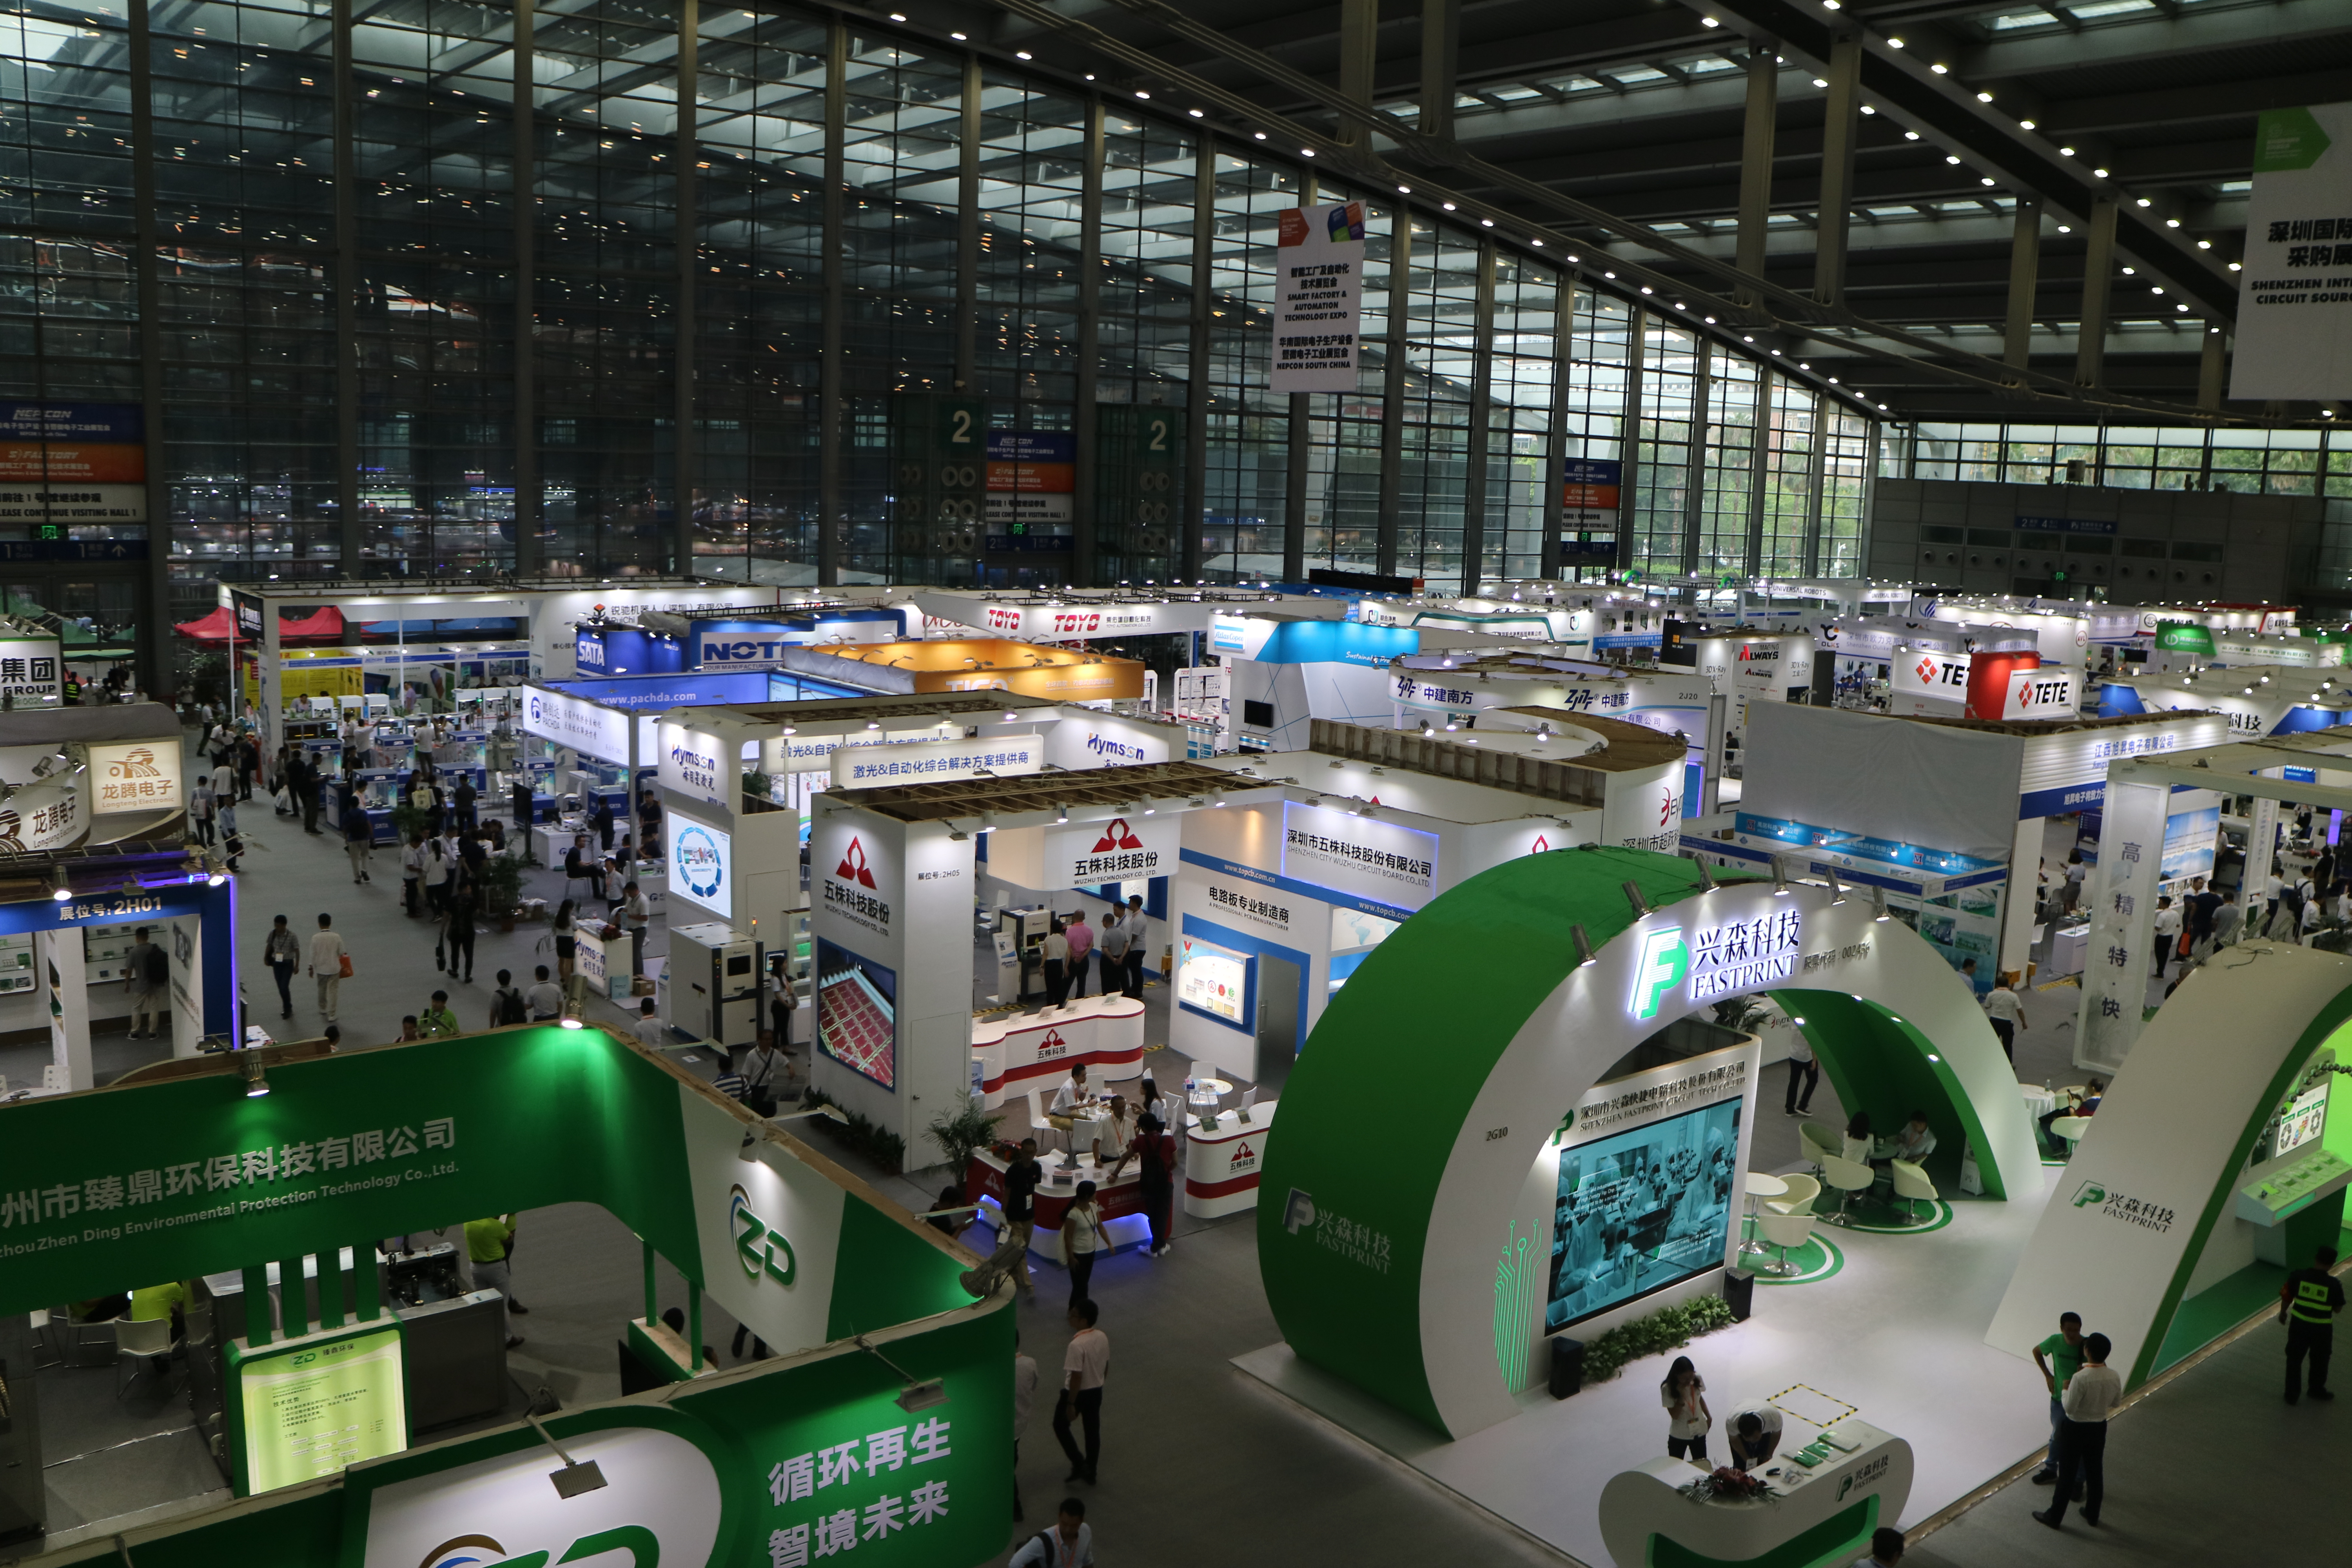 中国汽车电子技术展览在深圳举行 多家企业参展